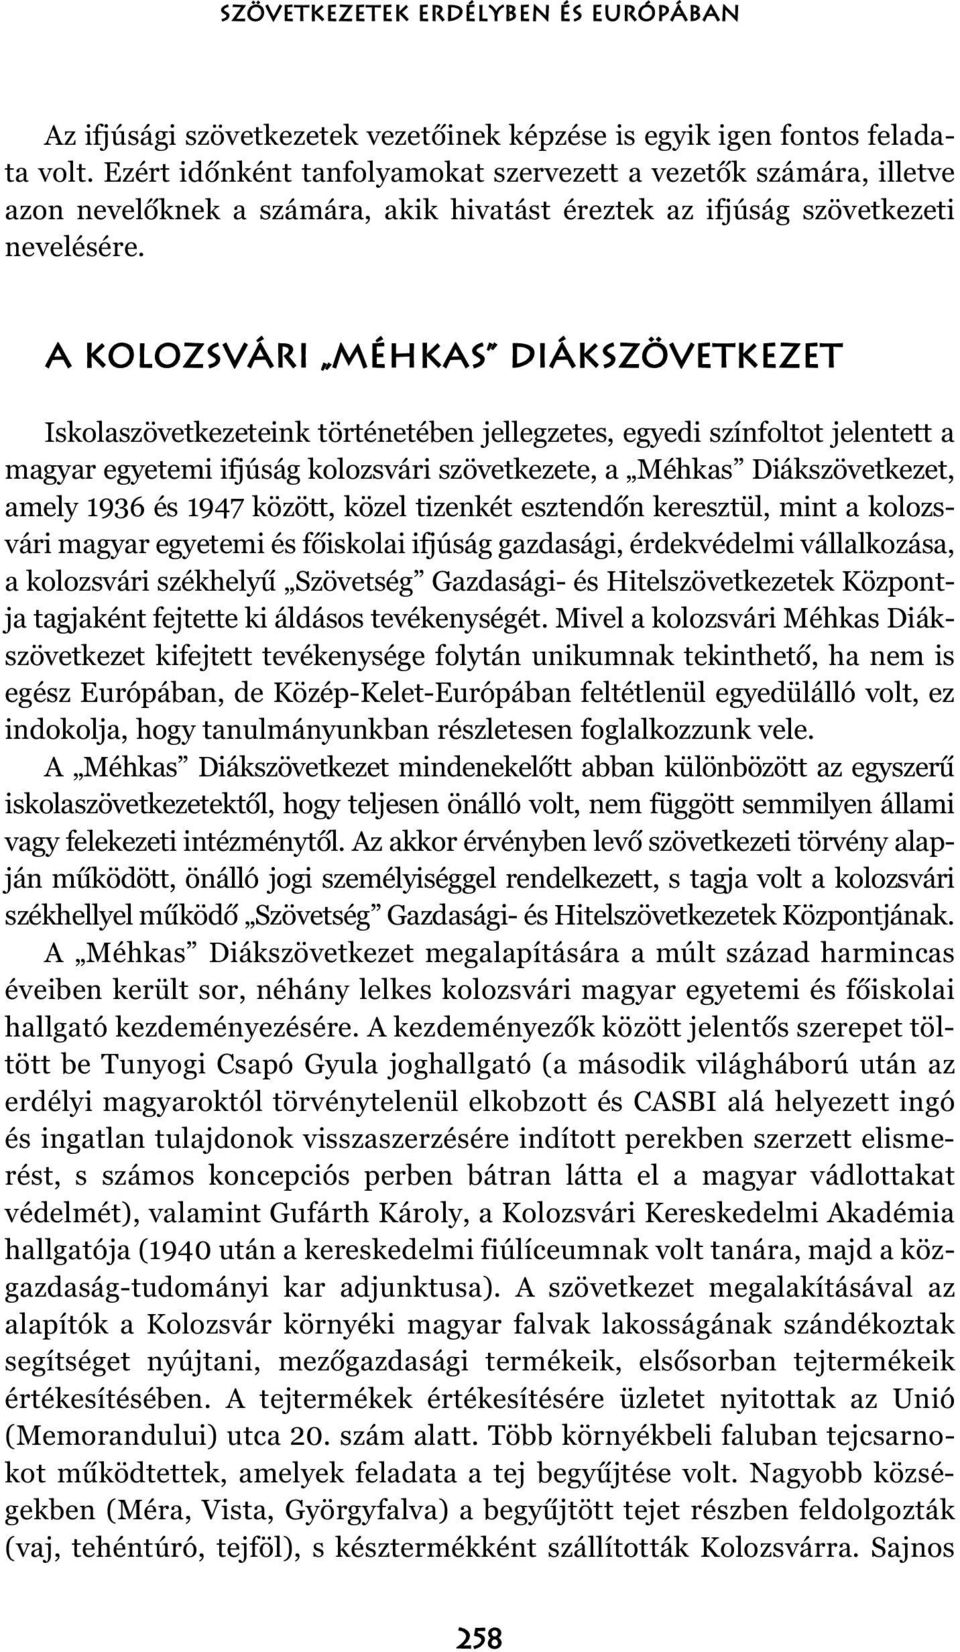 A kolozsvári Méhkas Diákszövetkezet Iskolaszövetkezeteink történetében jellegzetes, egyedi színfoltot jelentett a magyar egyetemi ifjúság kolozsvári szövetkezete, a Méhkas Diákszövetkezet, amely 1936